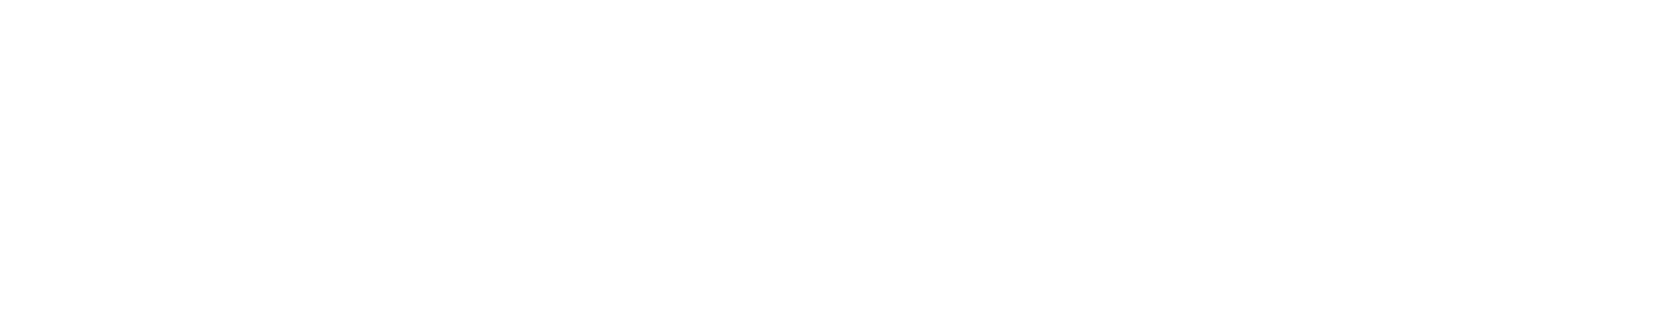 Erdene Resource Development Corp.